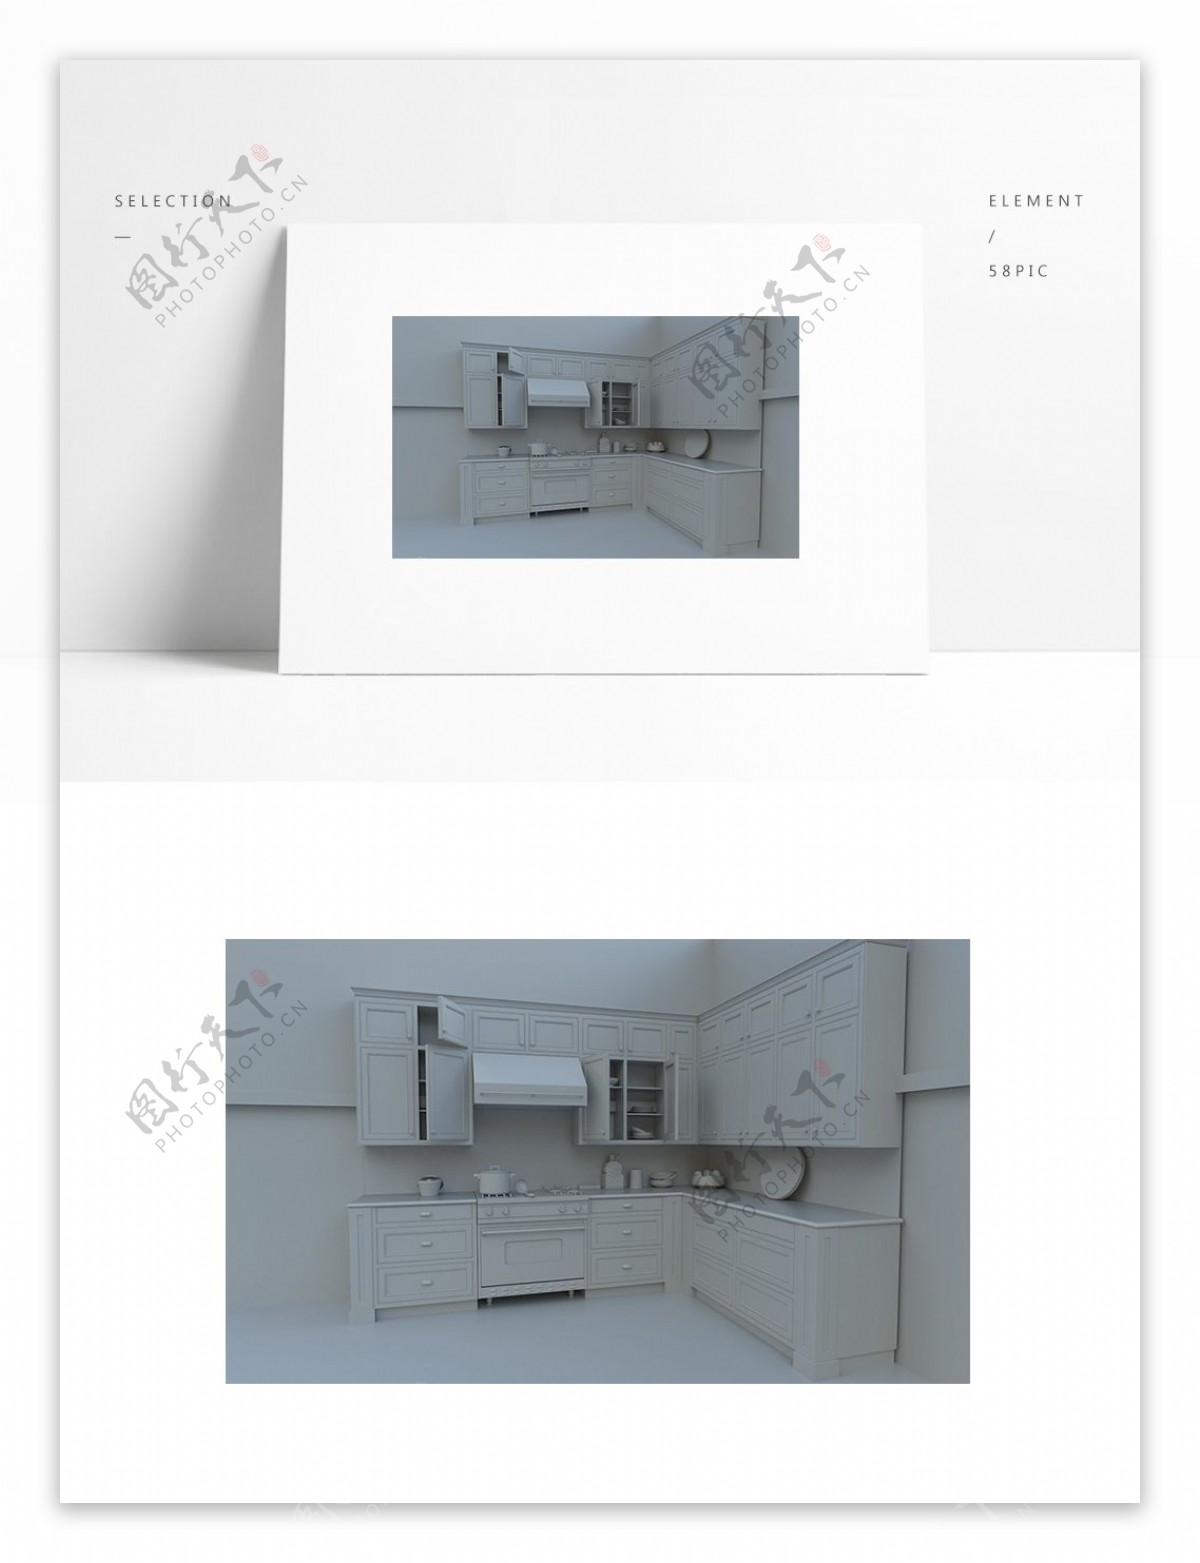 简约厨房橱柜场景模型